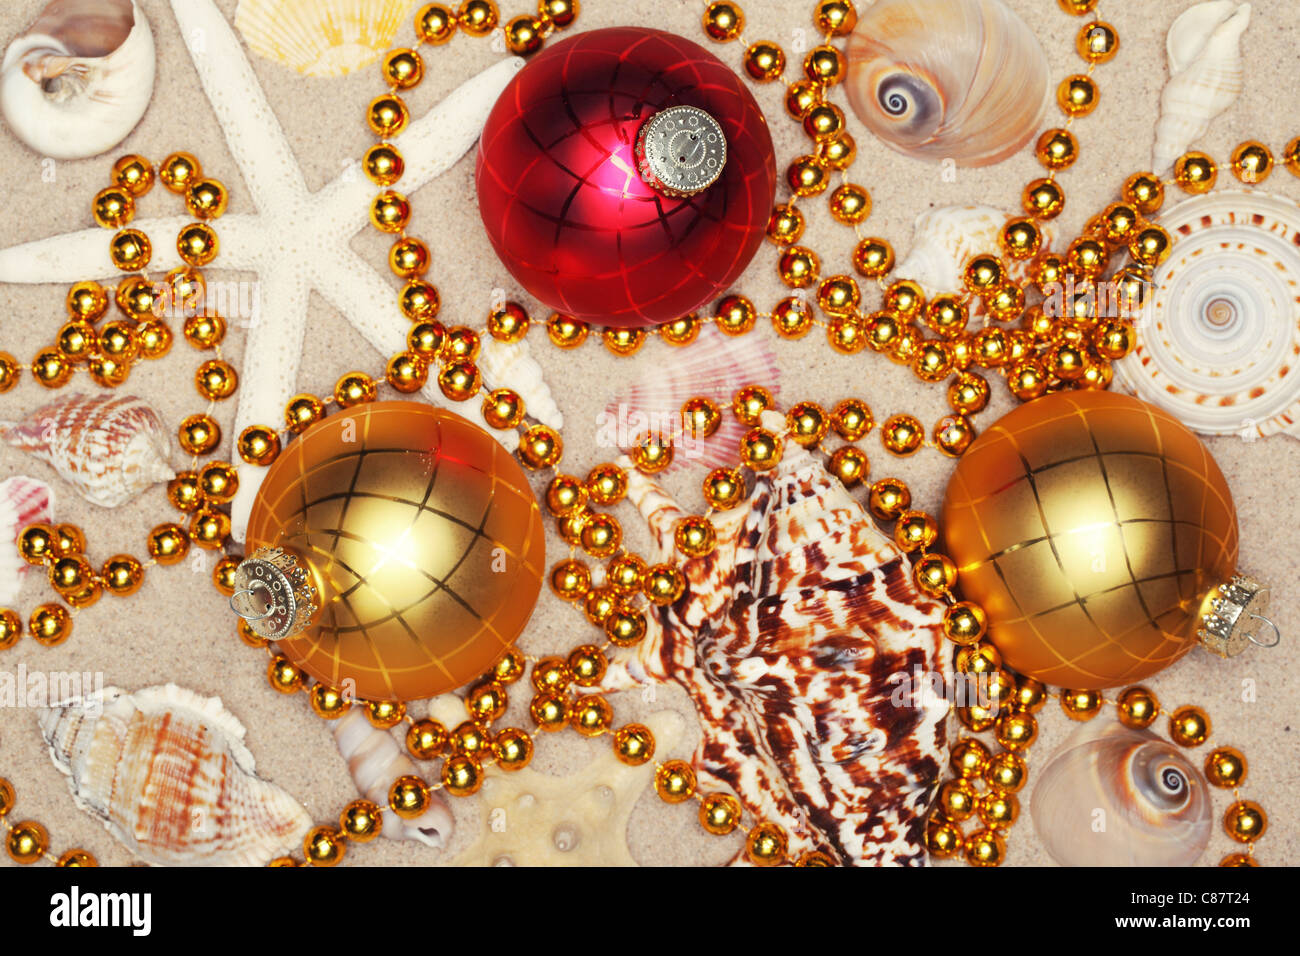 Boules de Noël,les coquillages et les perles sur des sables,libre. Banque D'Images